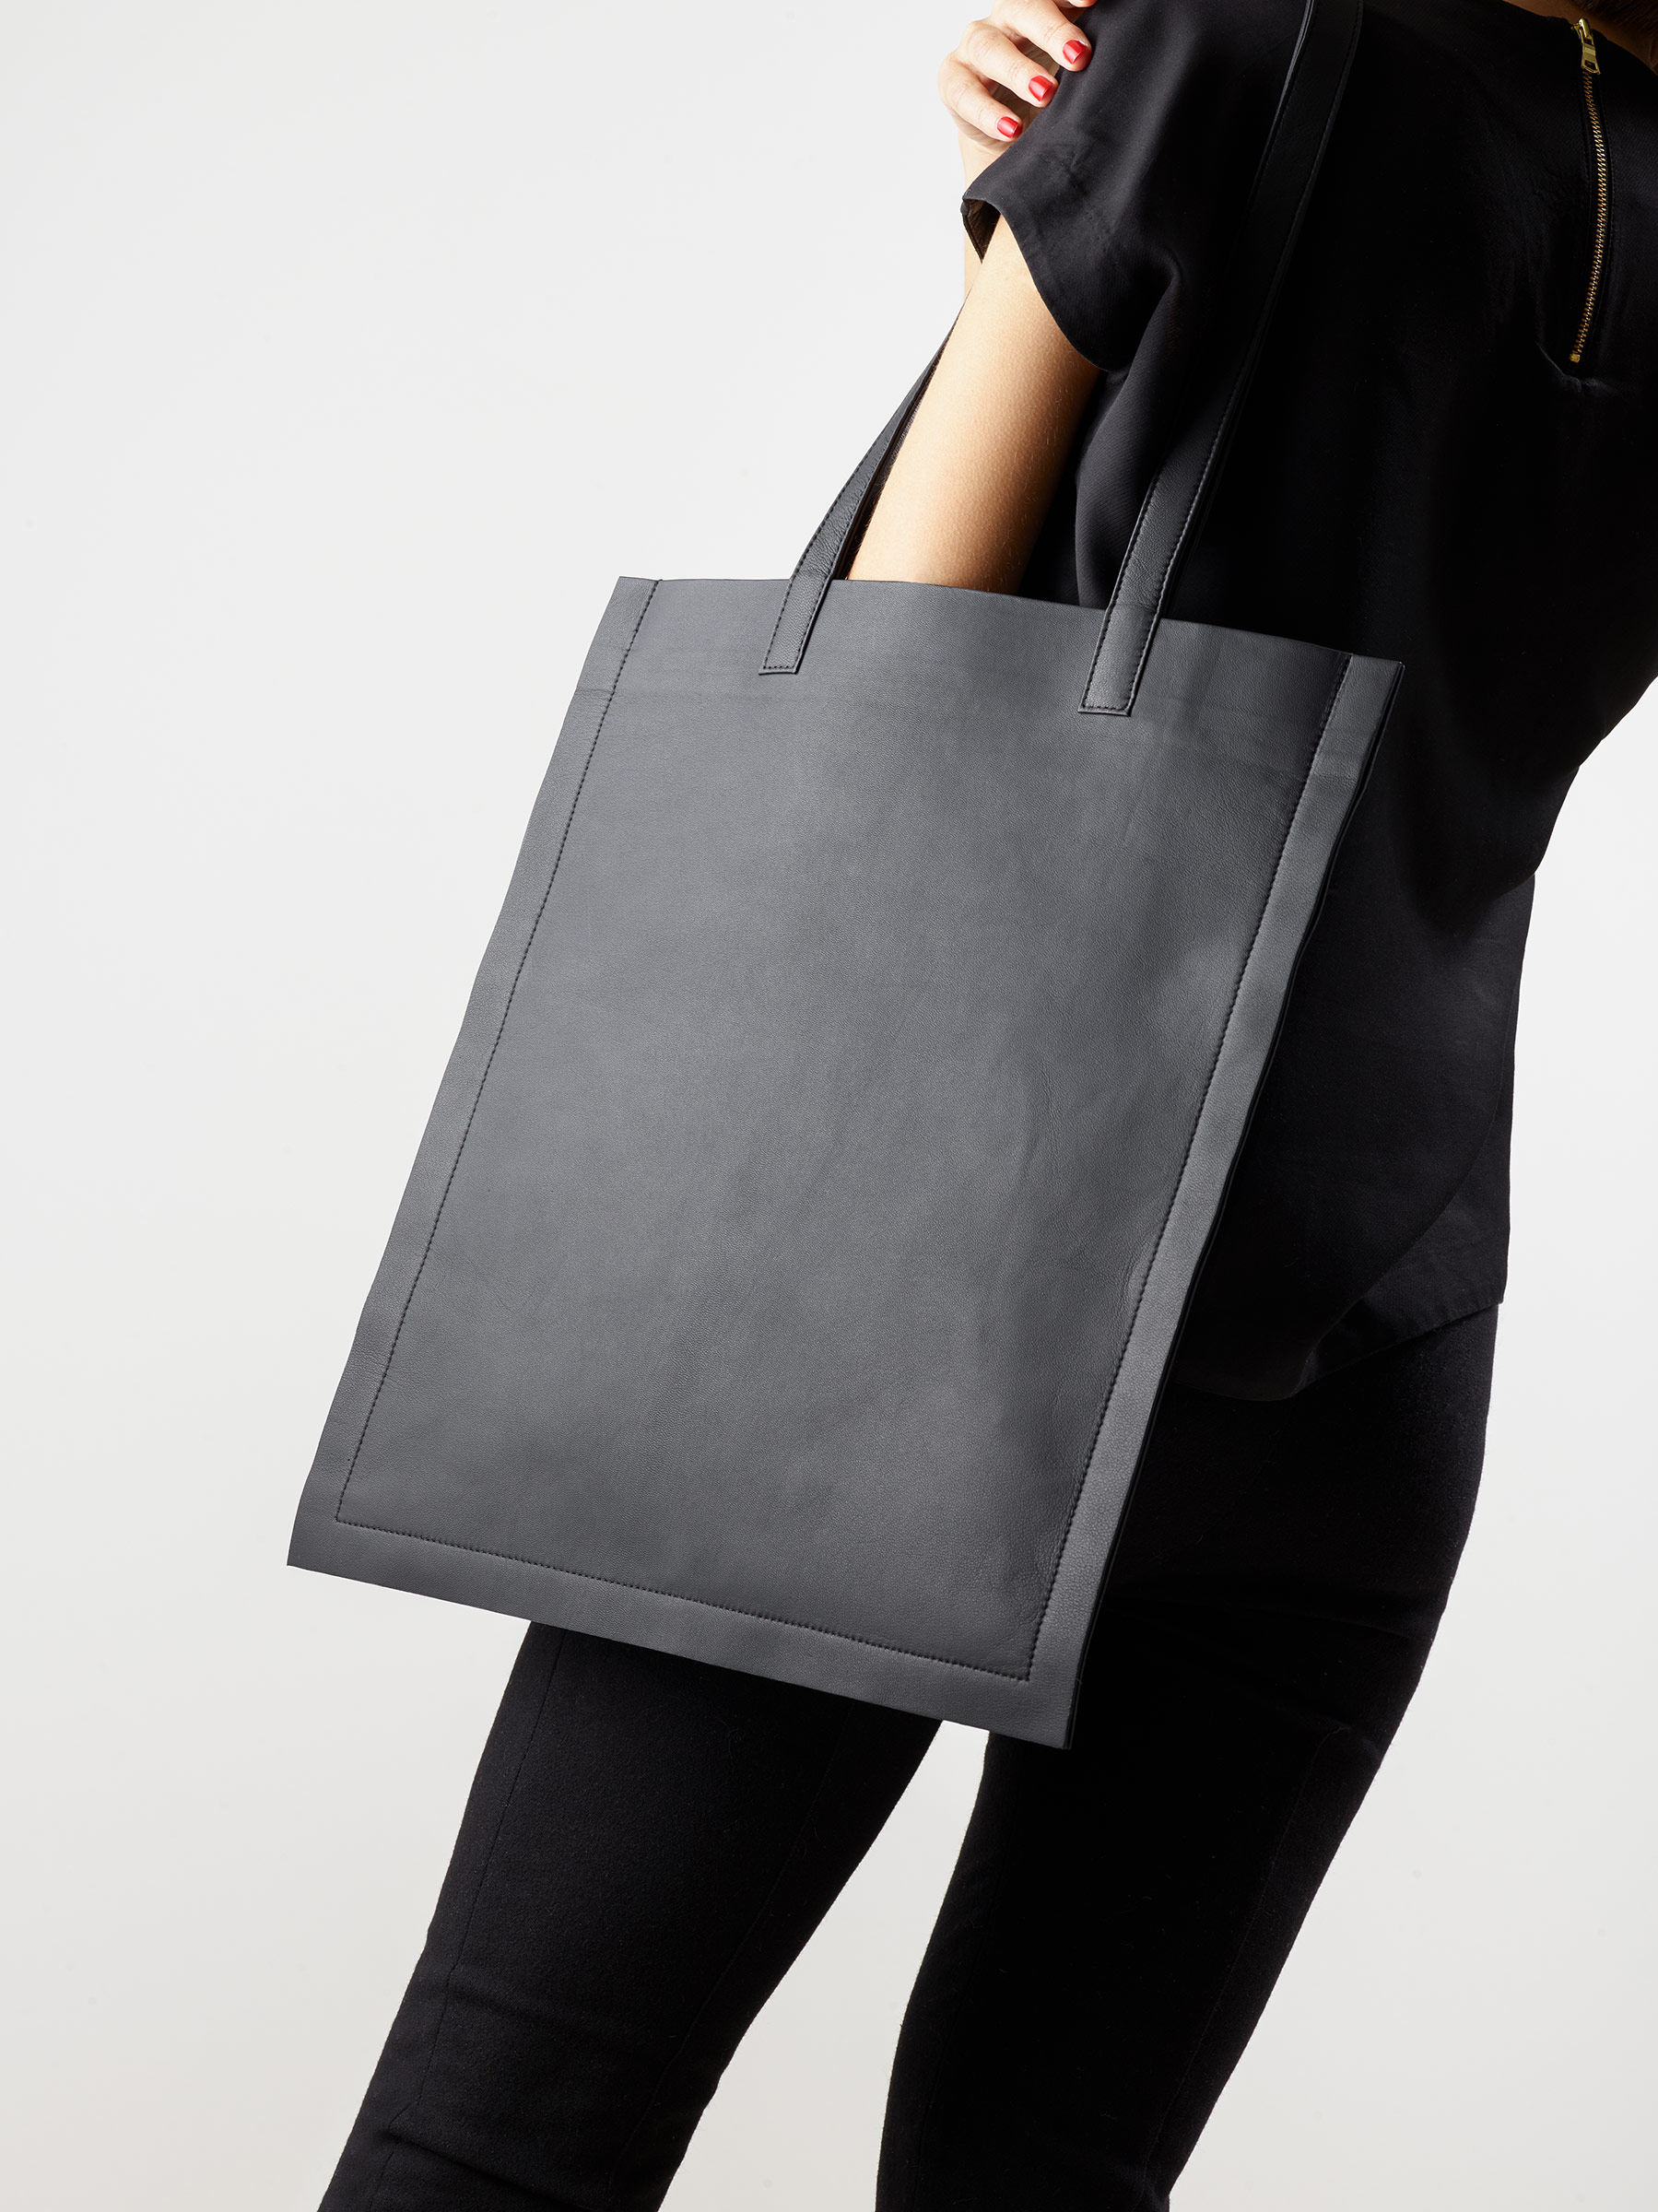 STRATO shoulder bag in black lamb nappa leather